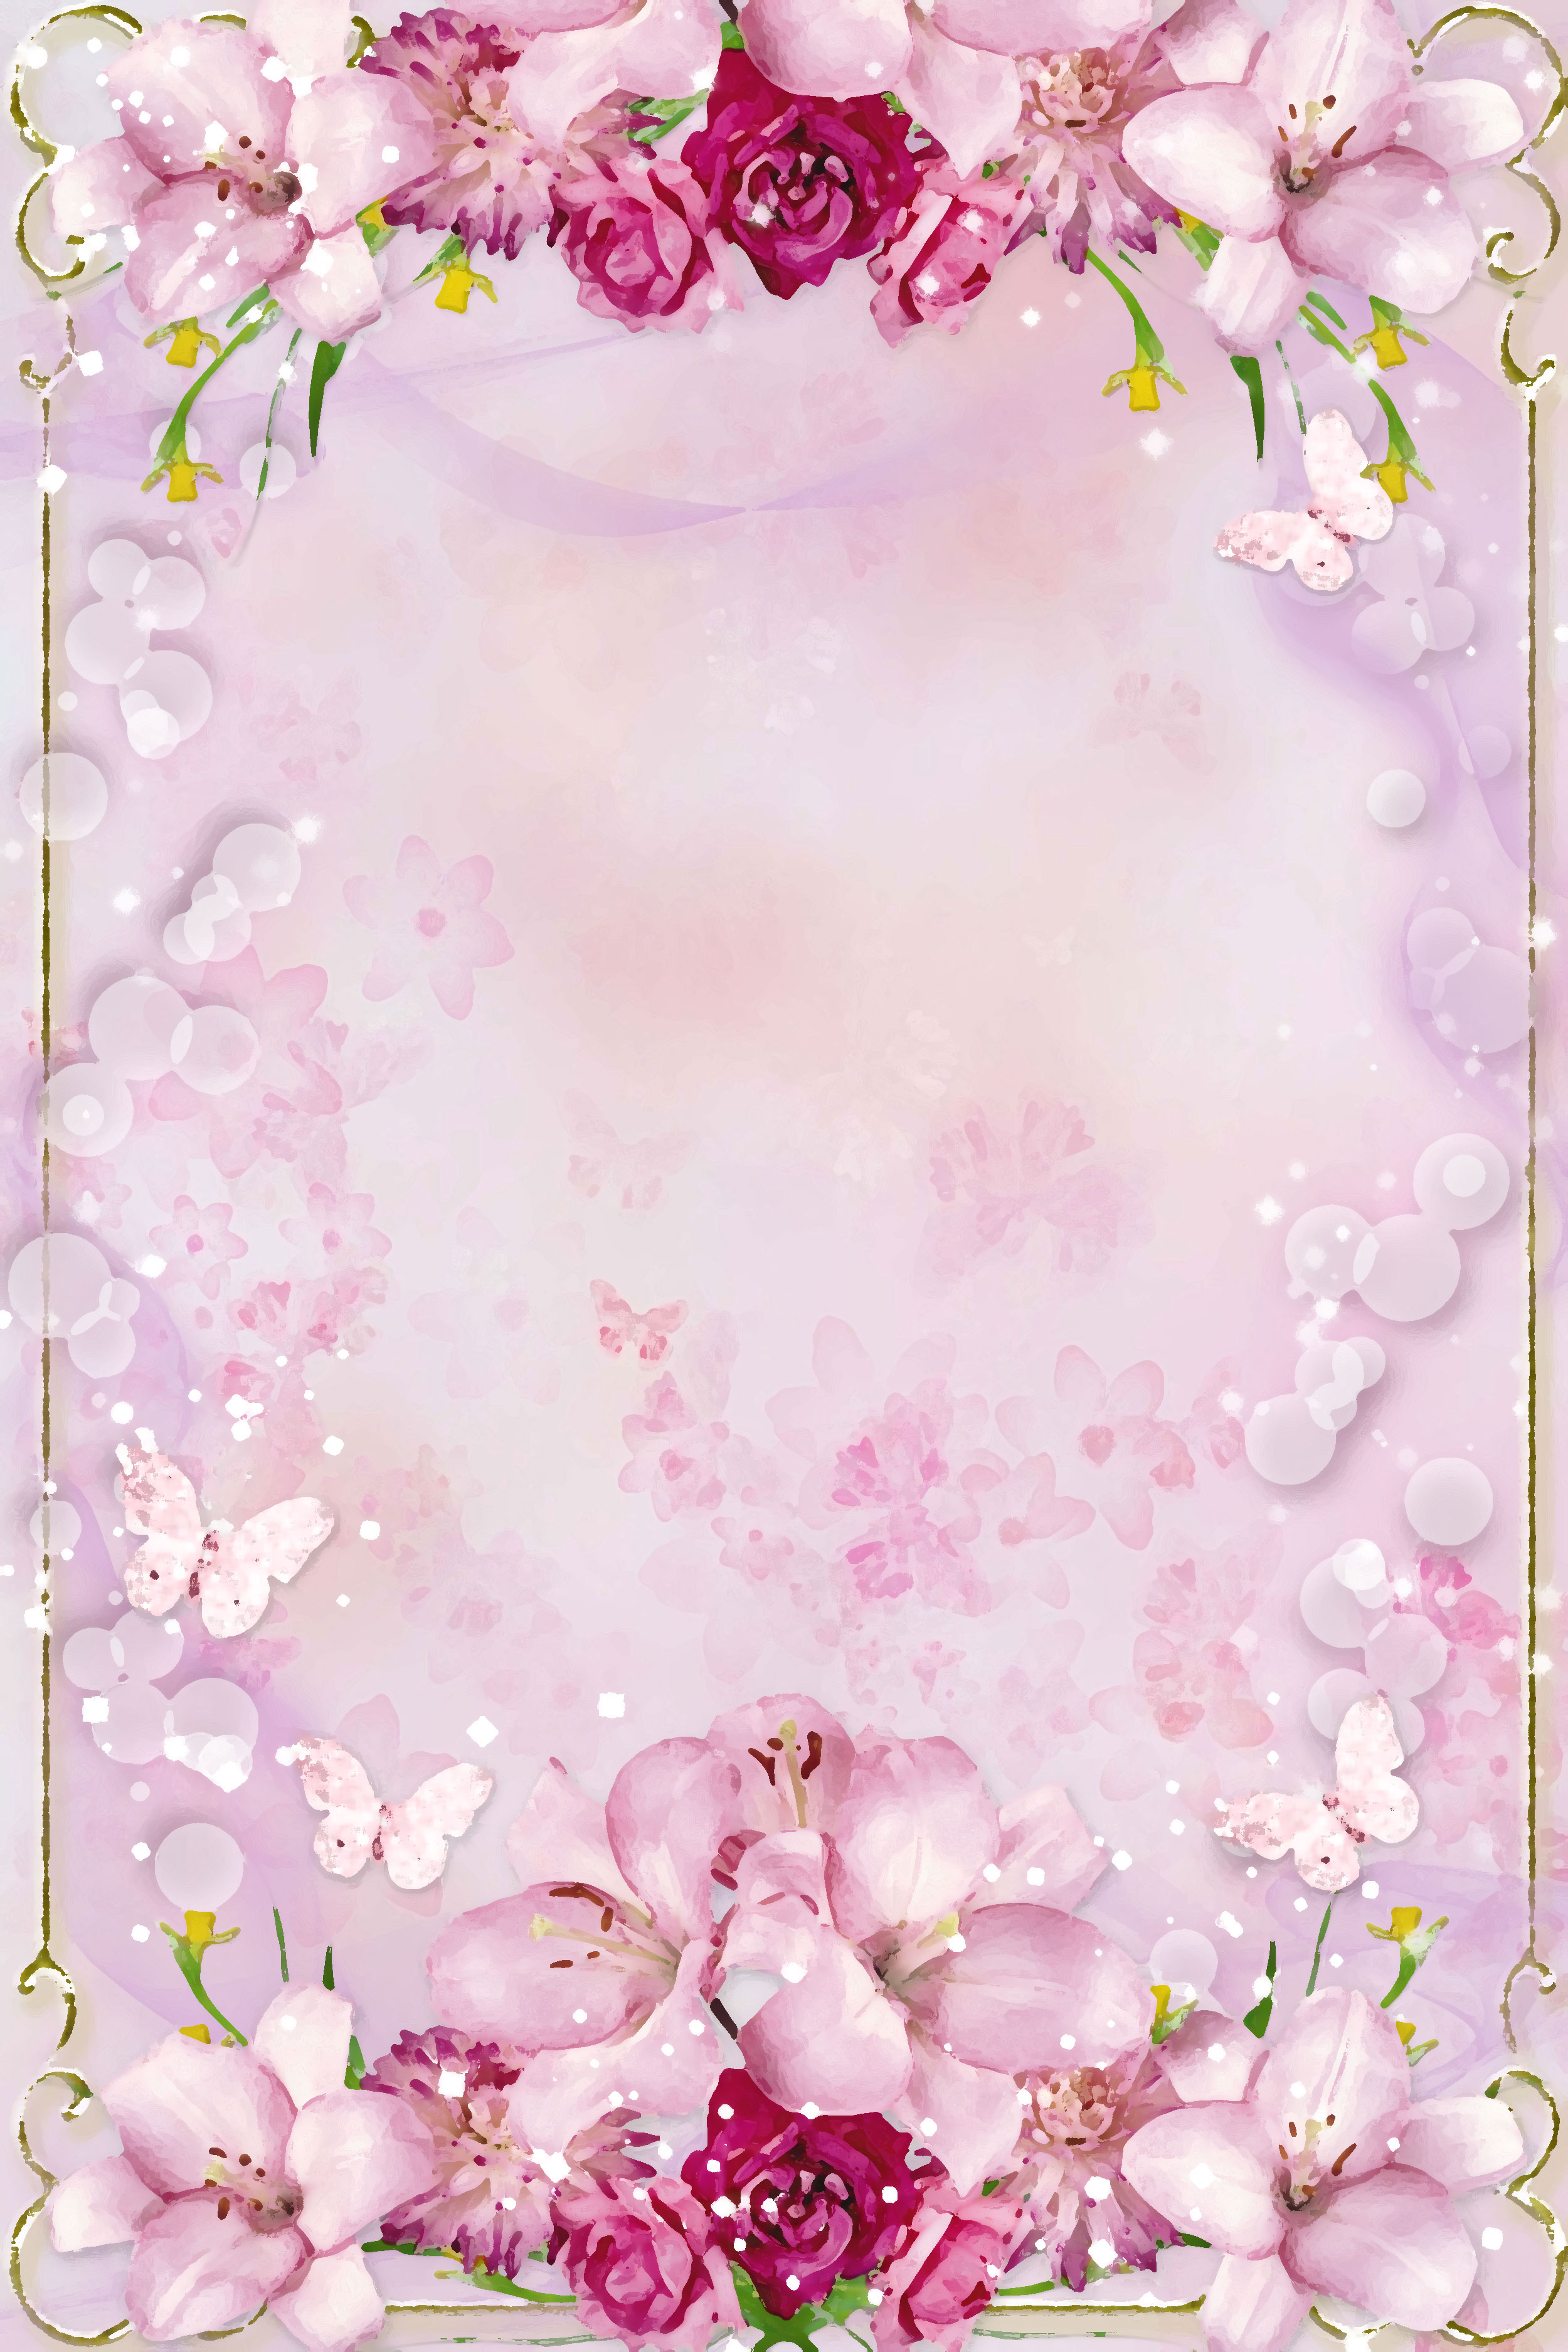 ピンクの花のイラスト フリー素材 壁紙 背景no 5 ピンク 赤紫 蝶 光粒